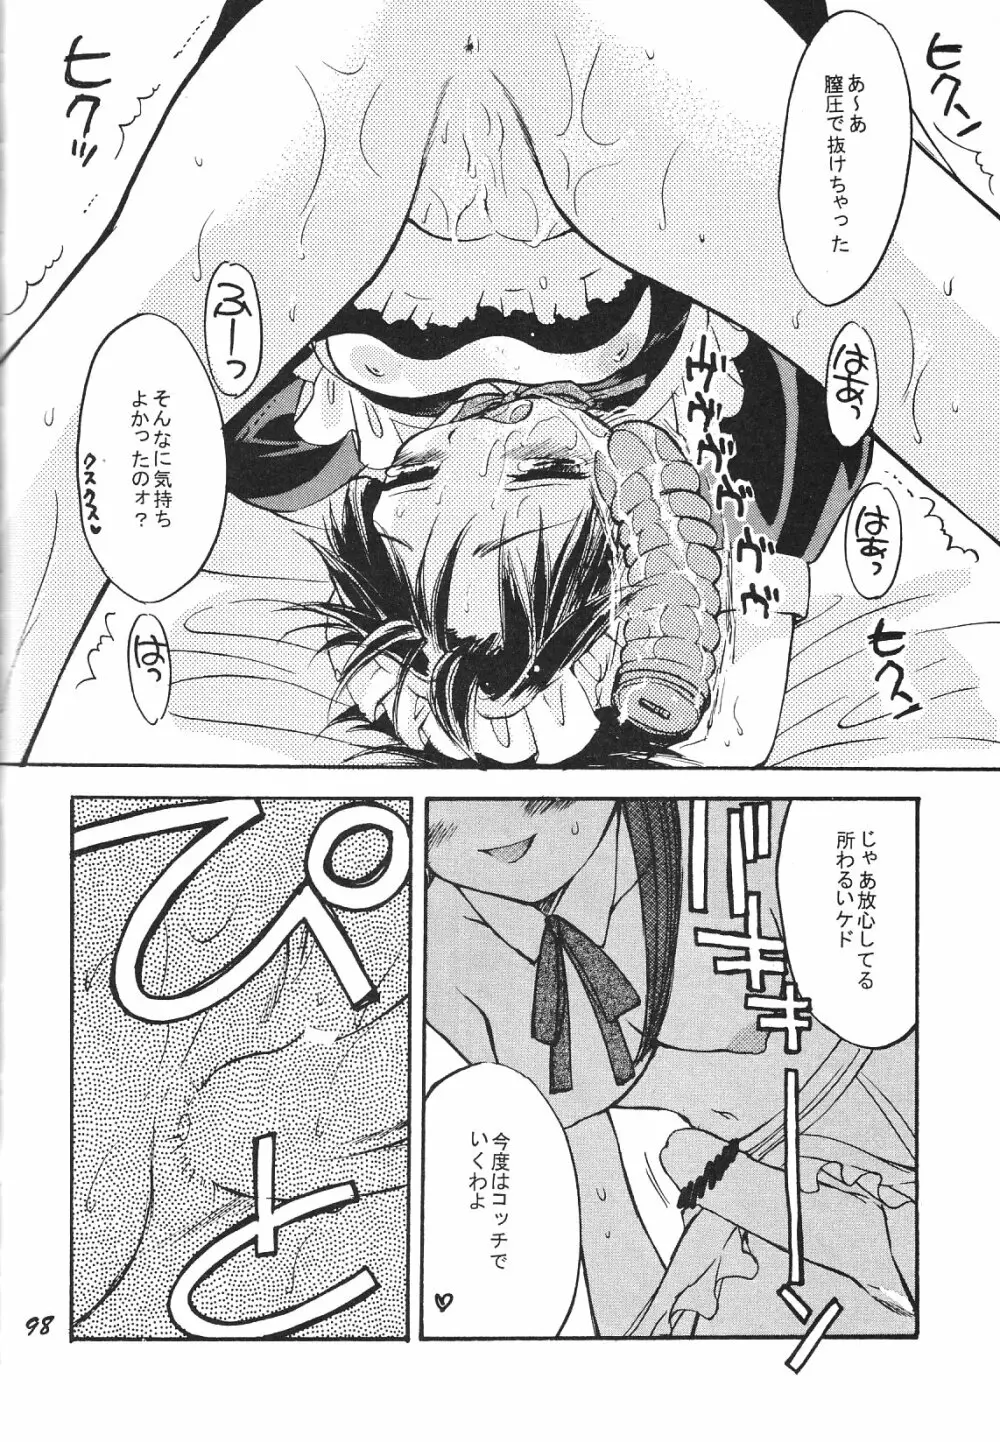 Maniac Juice 女シンジ再録集 ’96-’99 98ページ